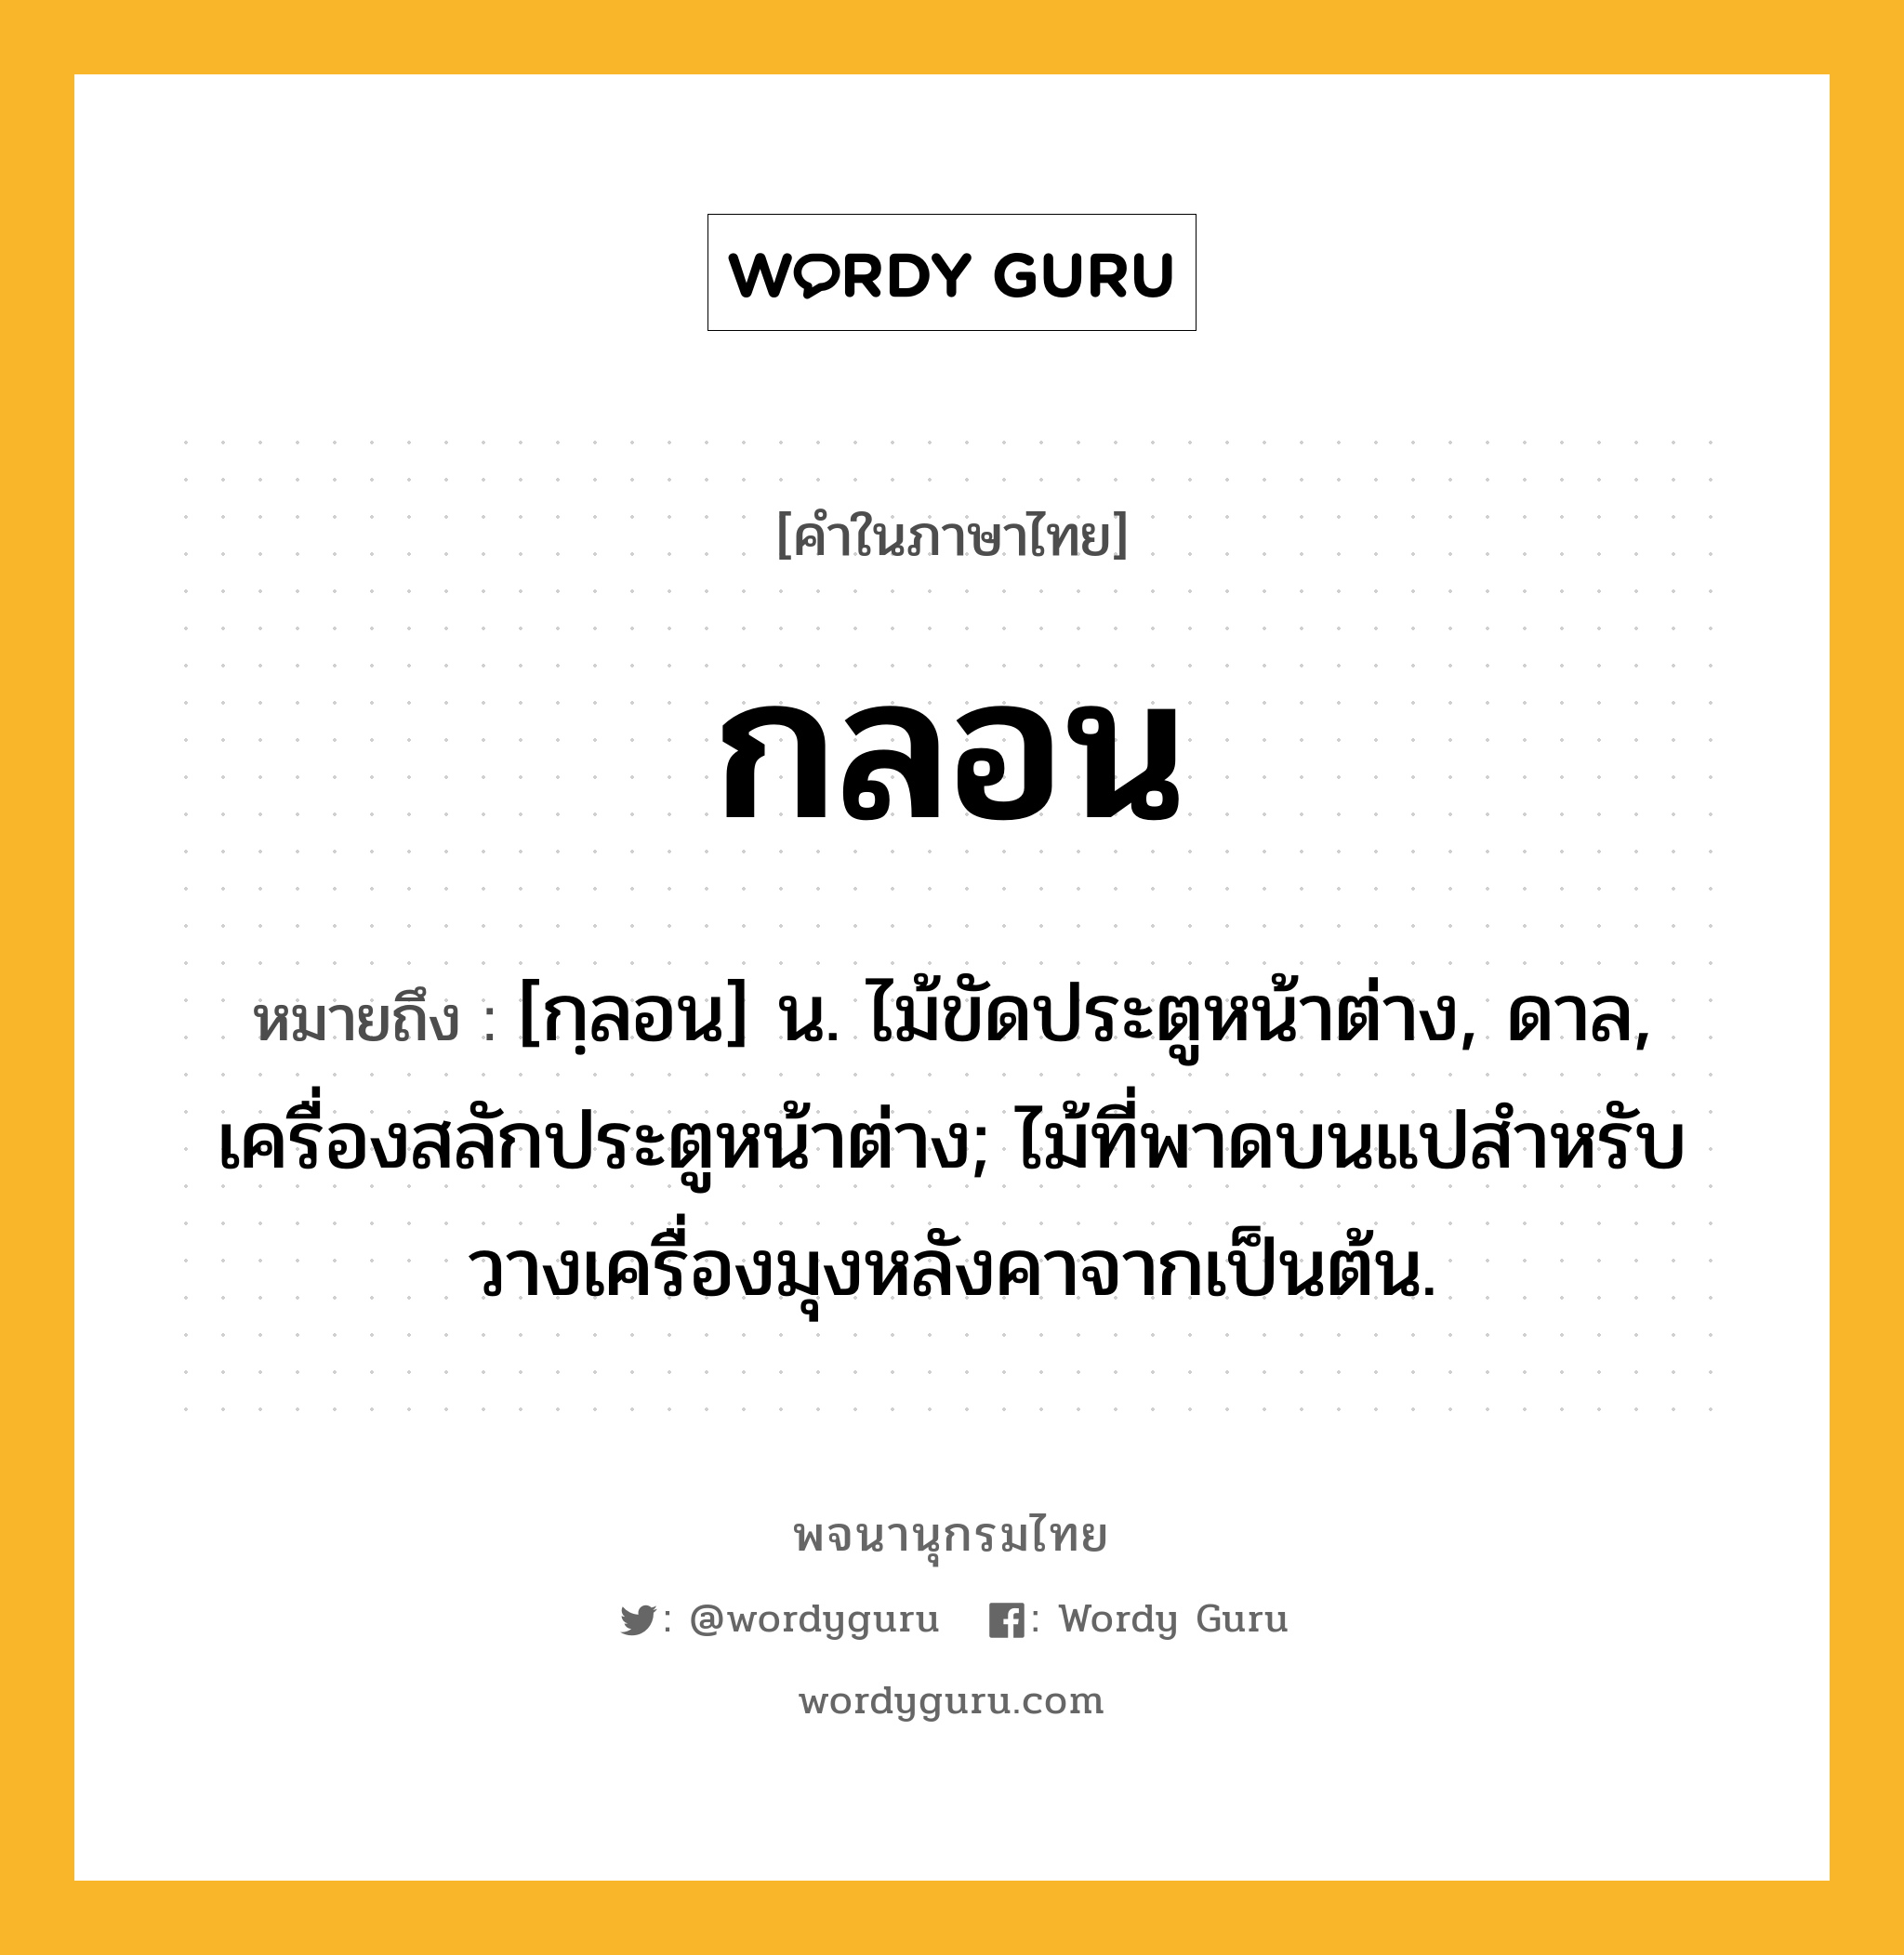 กลอน ความหมาย หมายถึงอะไร?, คำในภาษาไทย กลอน หมายถึง [กฺลอน] น. ไม้ขัดประตูหน้าต่าง, ดาล, เครื่องสลักประตูหน้าต่าง; ไม้ที่พาดบนแปสําหรับวางเครื่องมุงหลังคาจากเป็นต้น.